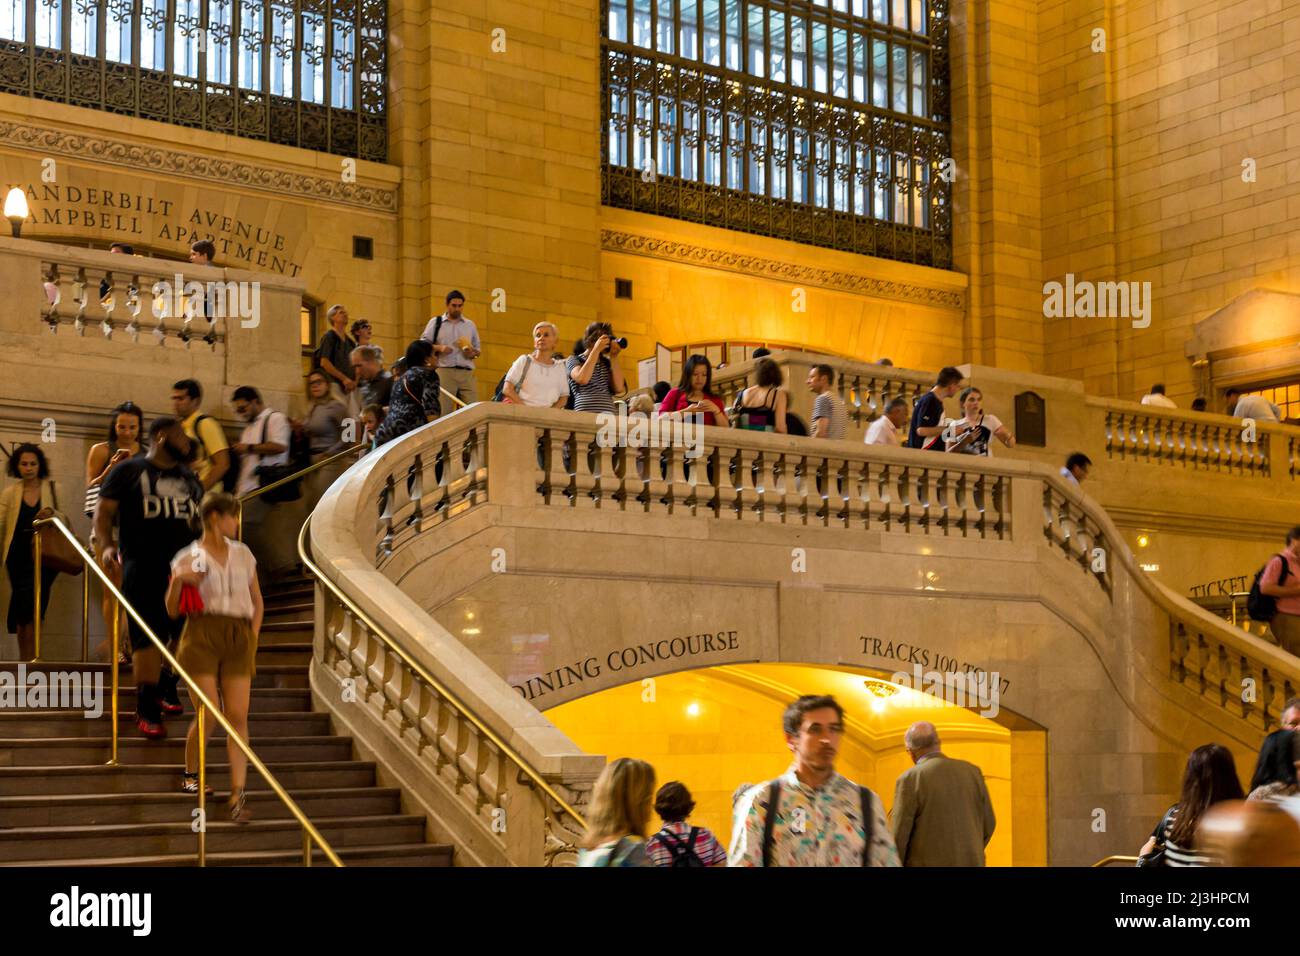 Grand Central - 42 Street, New York City, NY, USA, à l'intérieur de la gare centrale. Personnes, lumière jaune, affaires comme d'habitude Banque D'Images